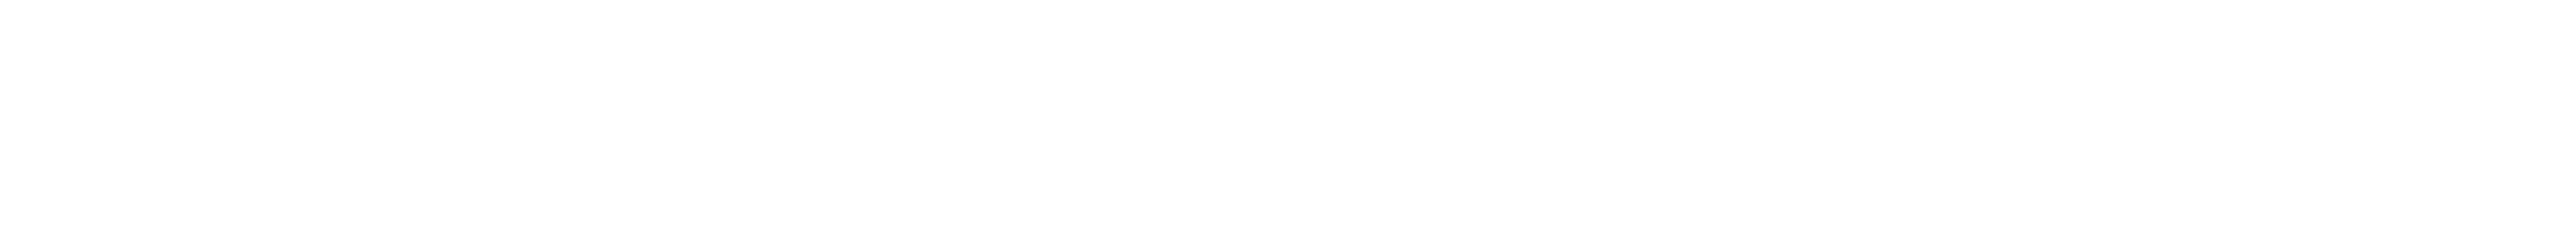 CHAKIÑAN, Revista de Ciencias Sociales y Humanidades